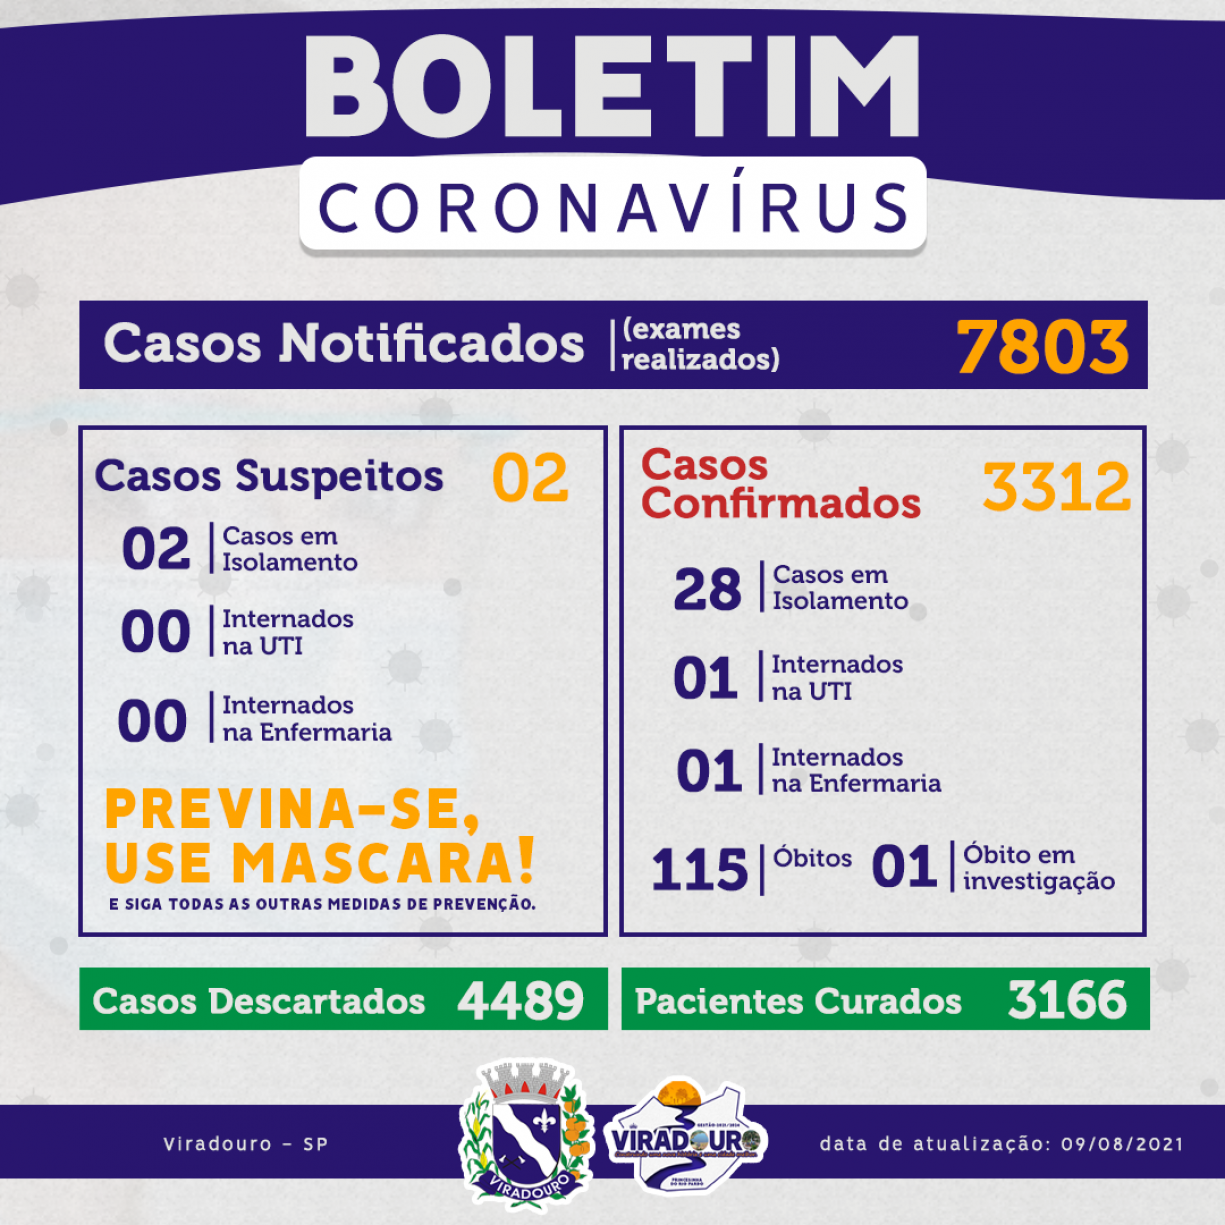 CORONAVÍRUS: BOLETIM EPIDEMIOLÓGICO (ATUALIZAÇÃO 09/08/2021)